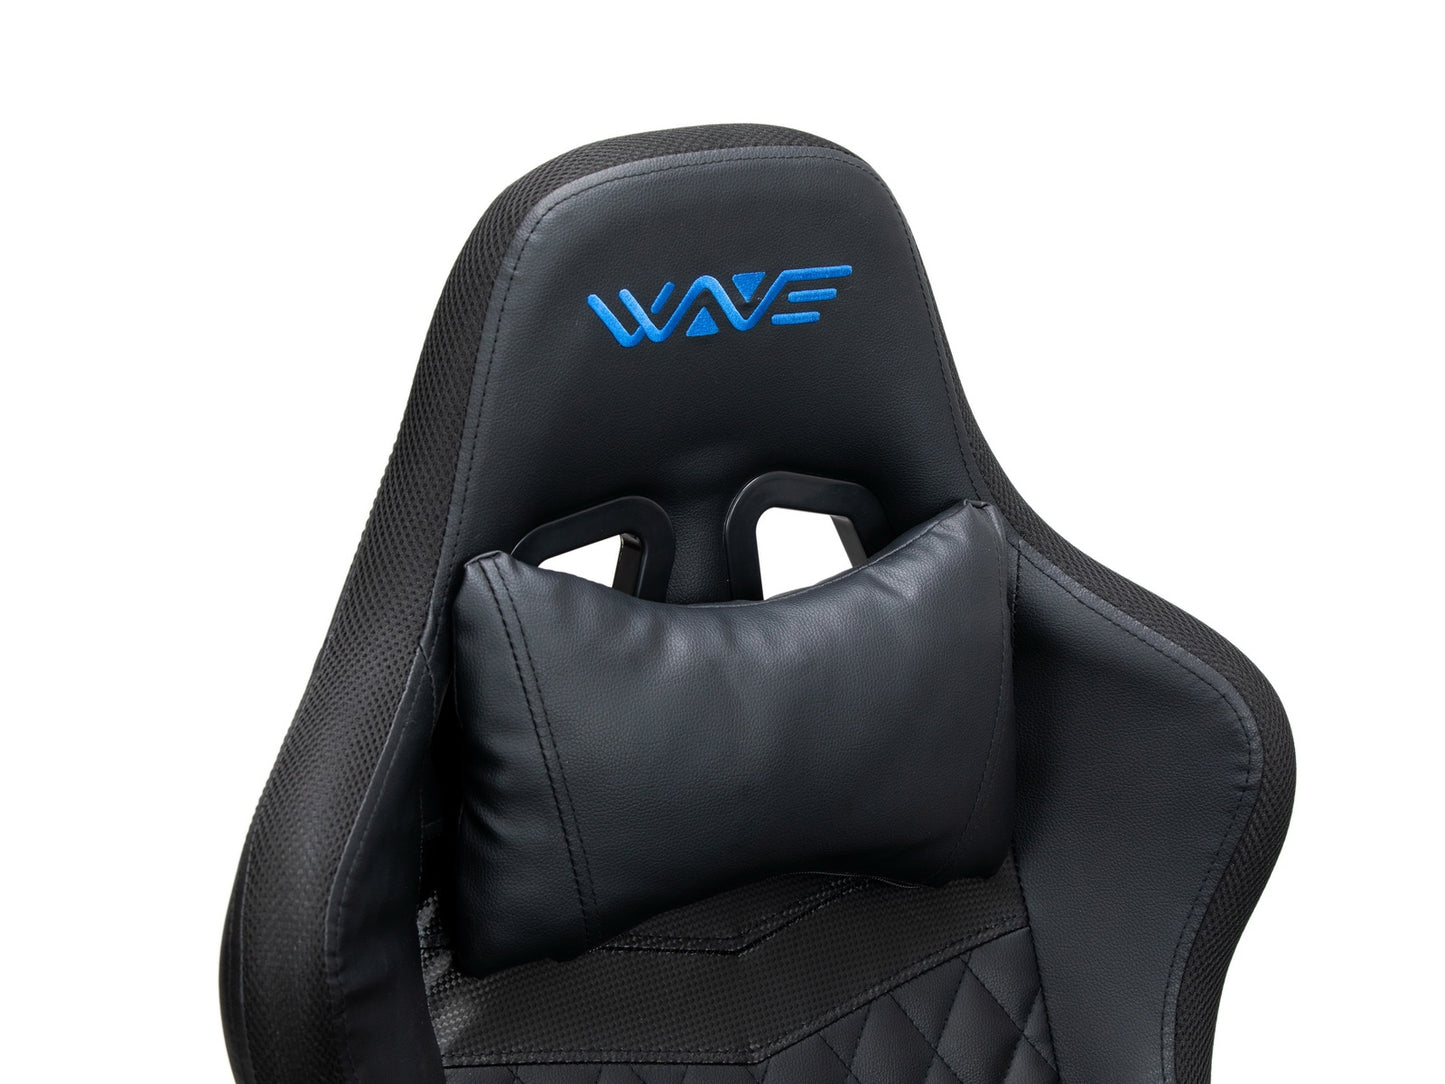 Chaise de jeu rembourrée en cuir écologique et LED RGB incluses, Wave Y-2412, Noir, L67xW66xH126-136 cm